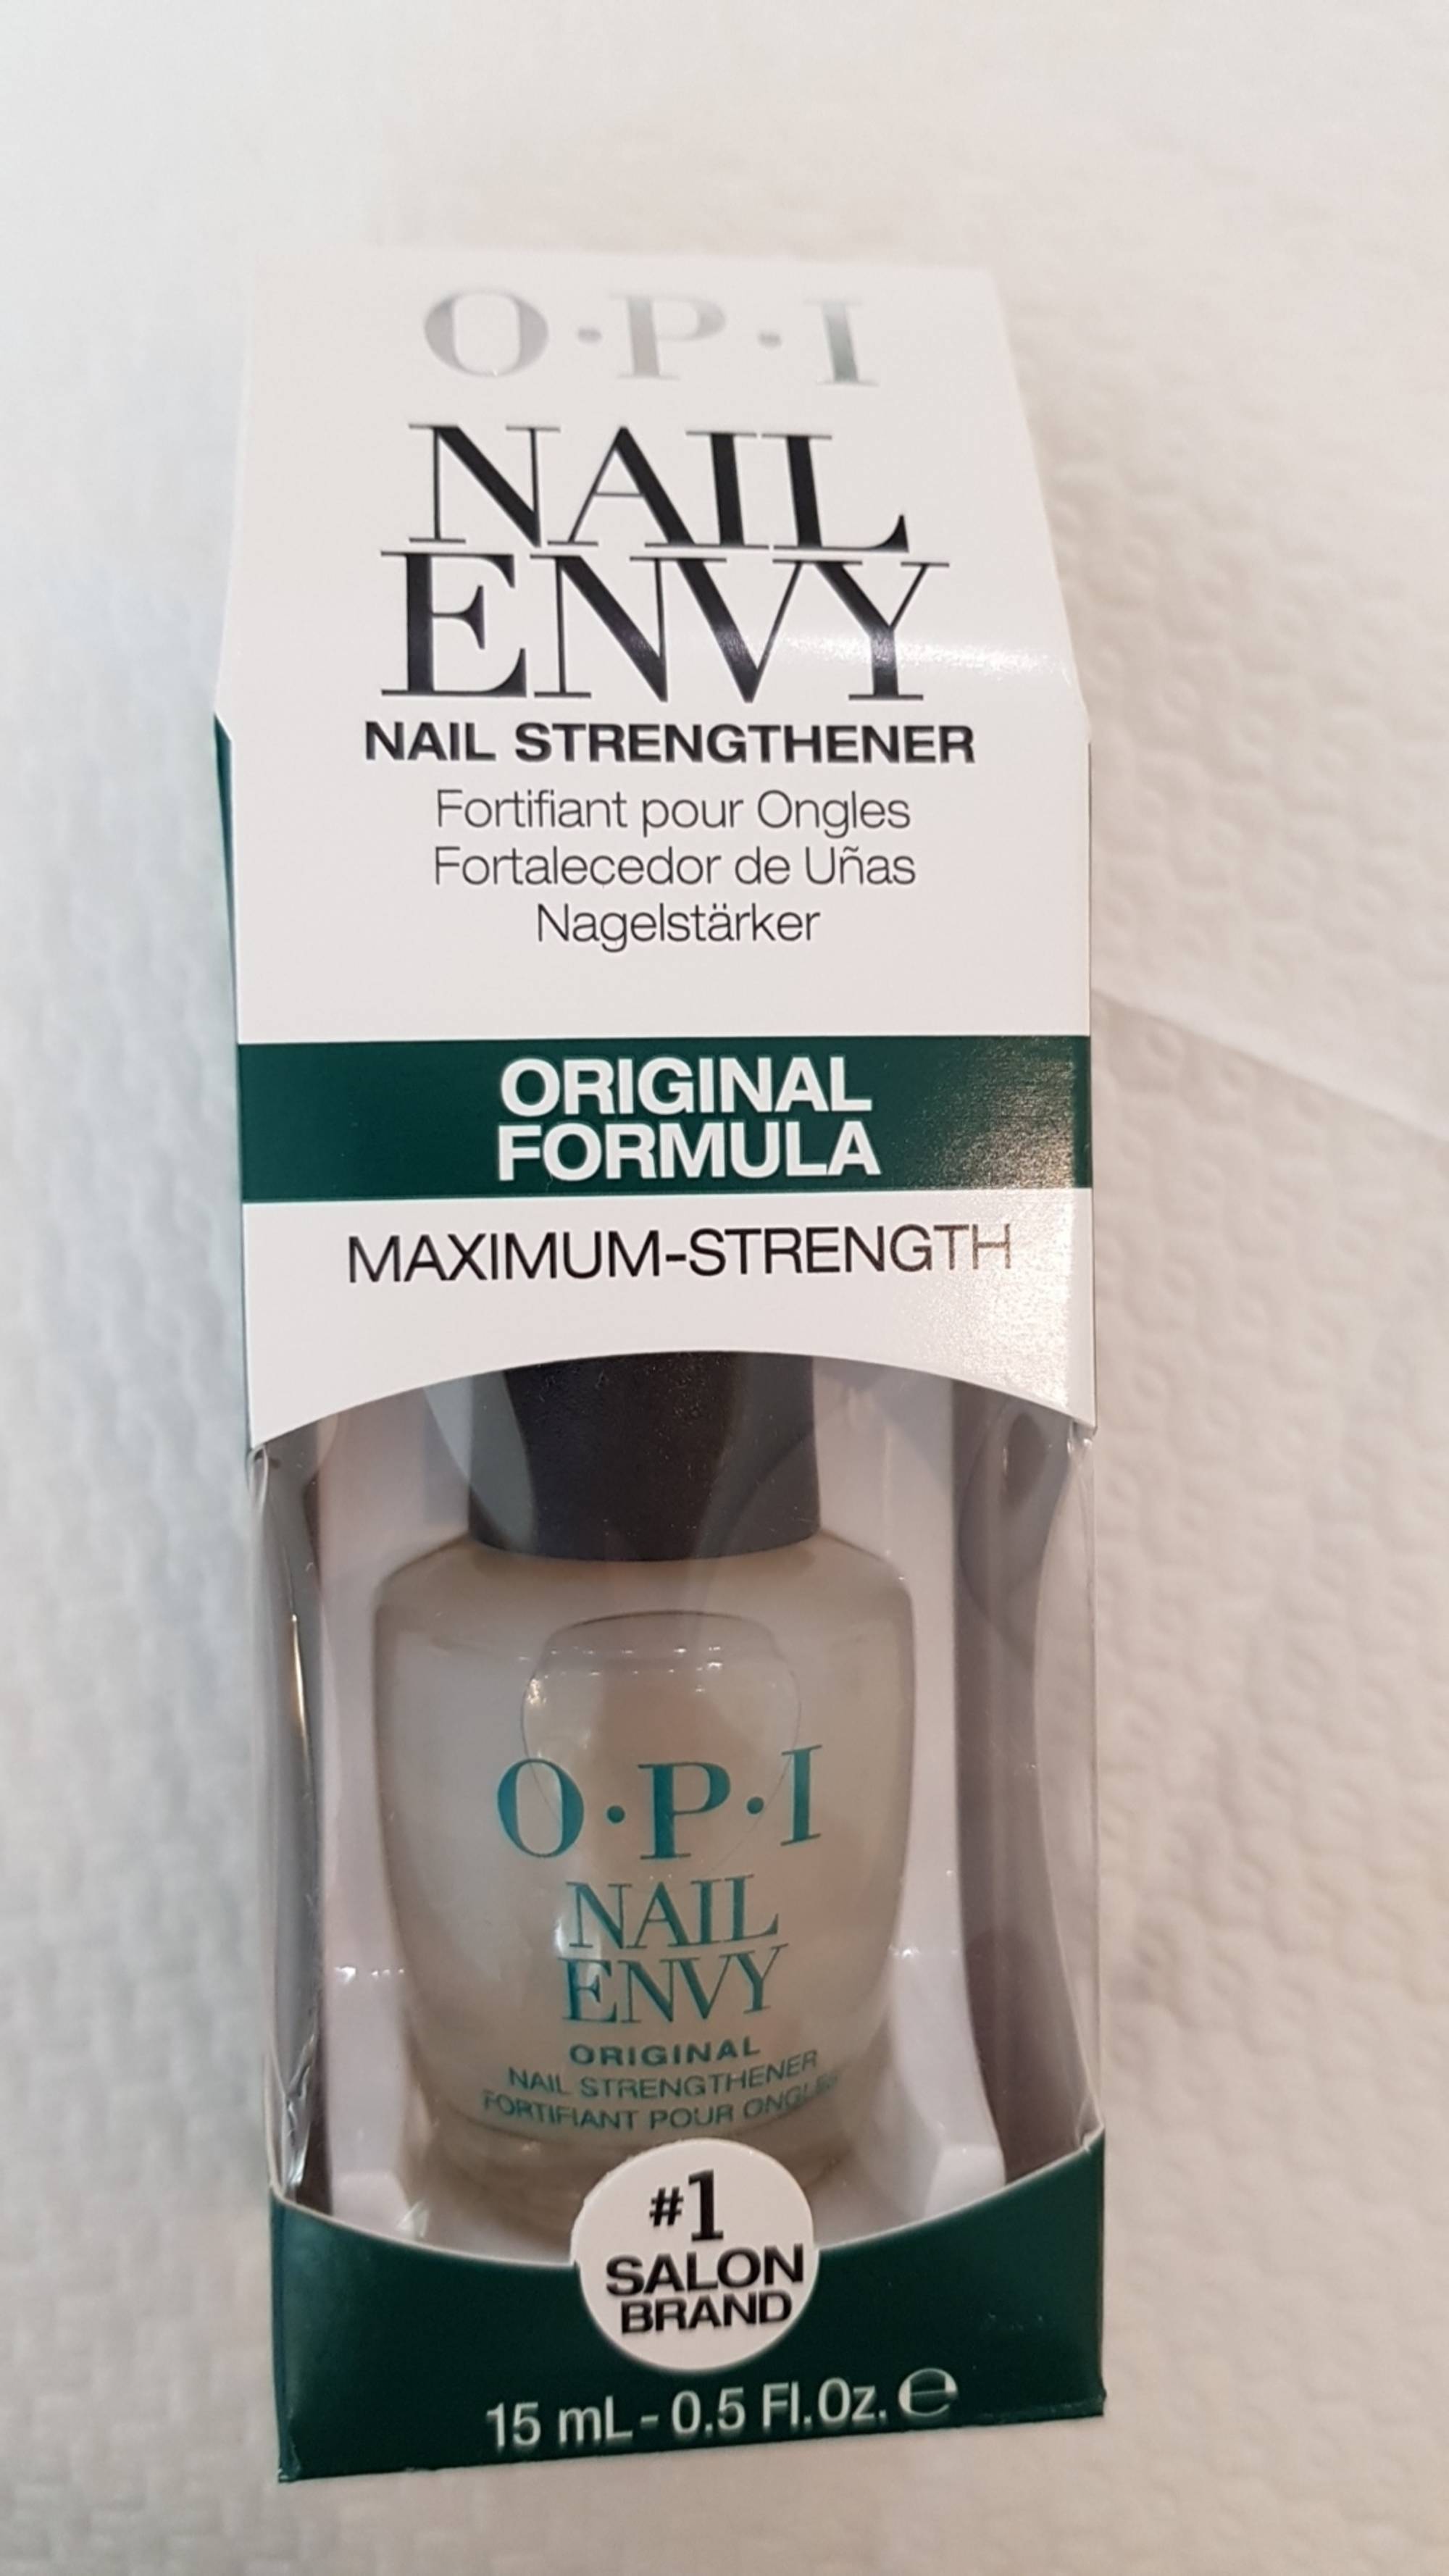 O.P.I - Nail envy - Nail strengthener